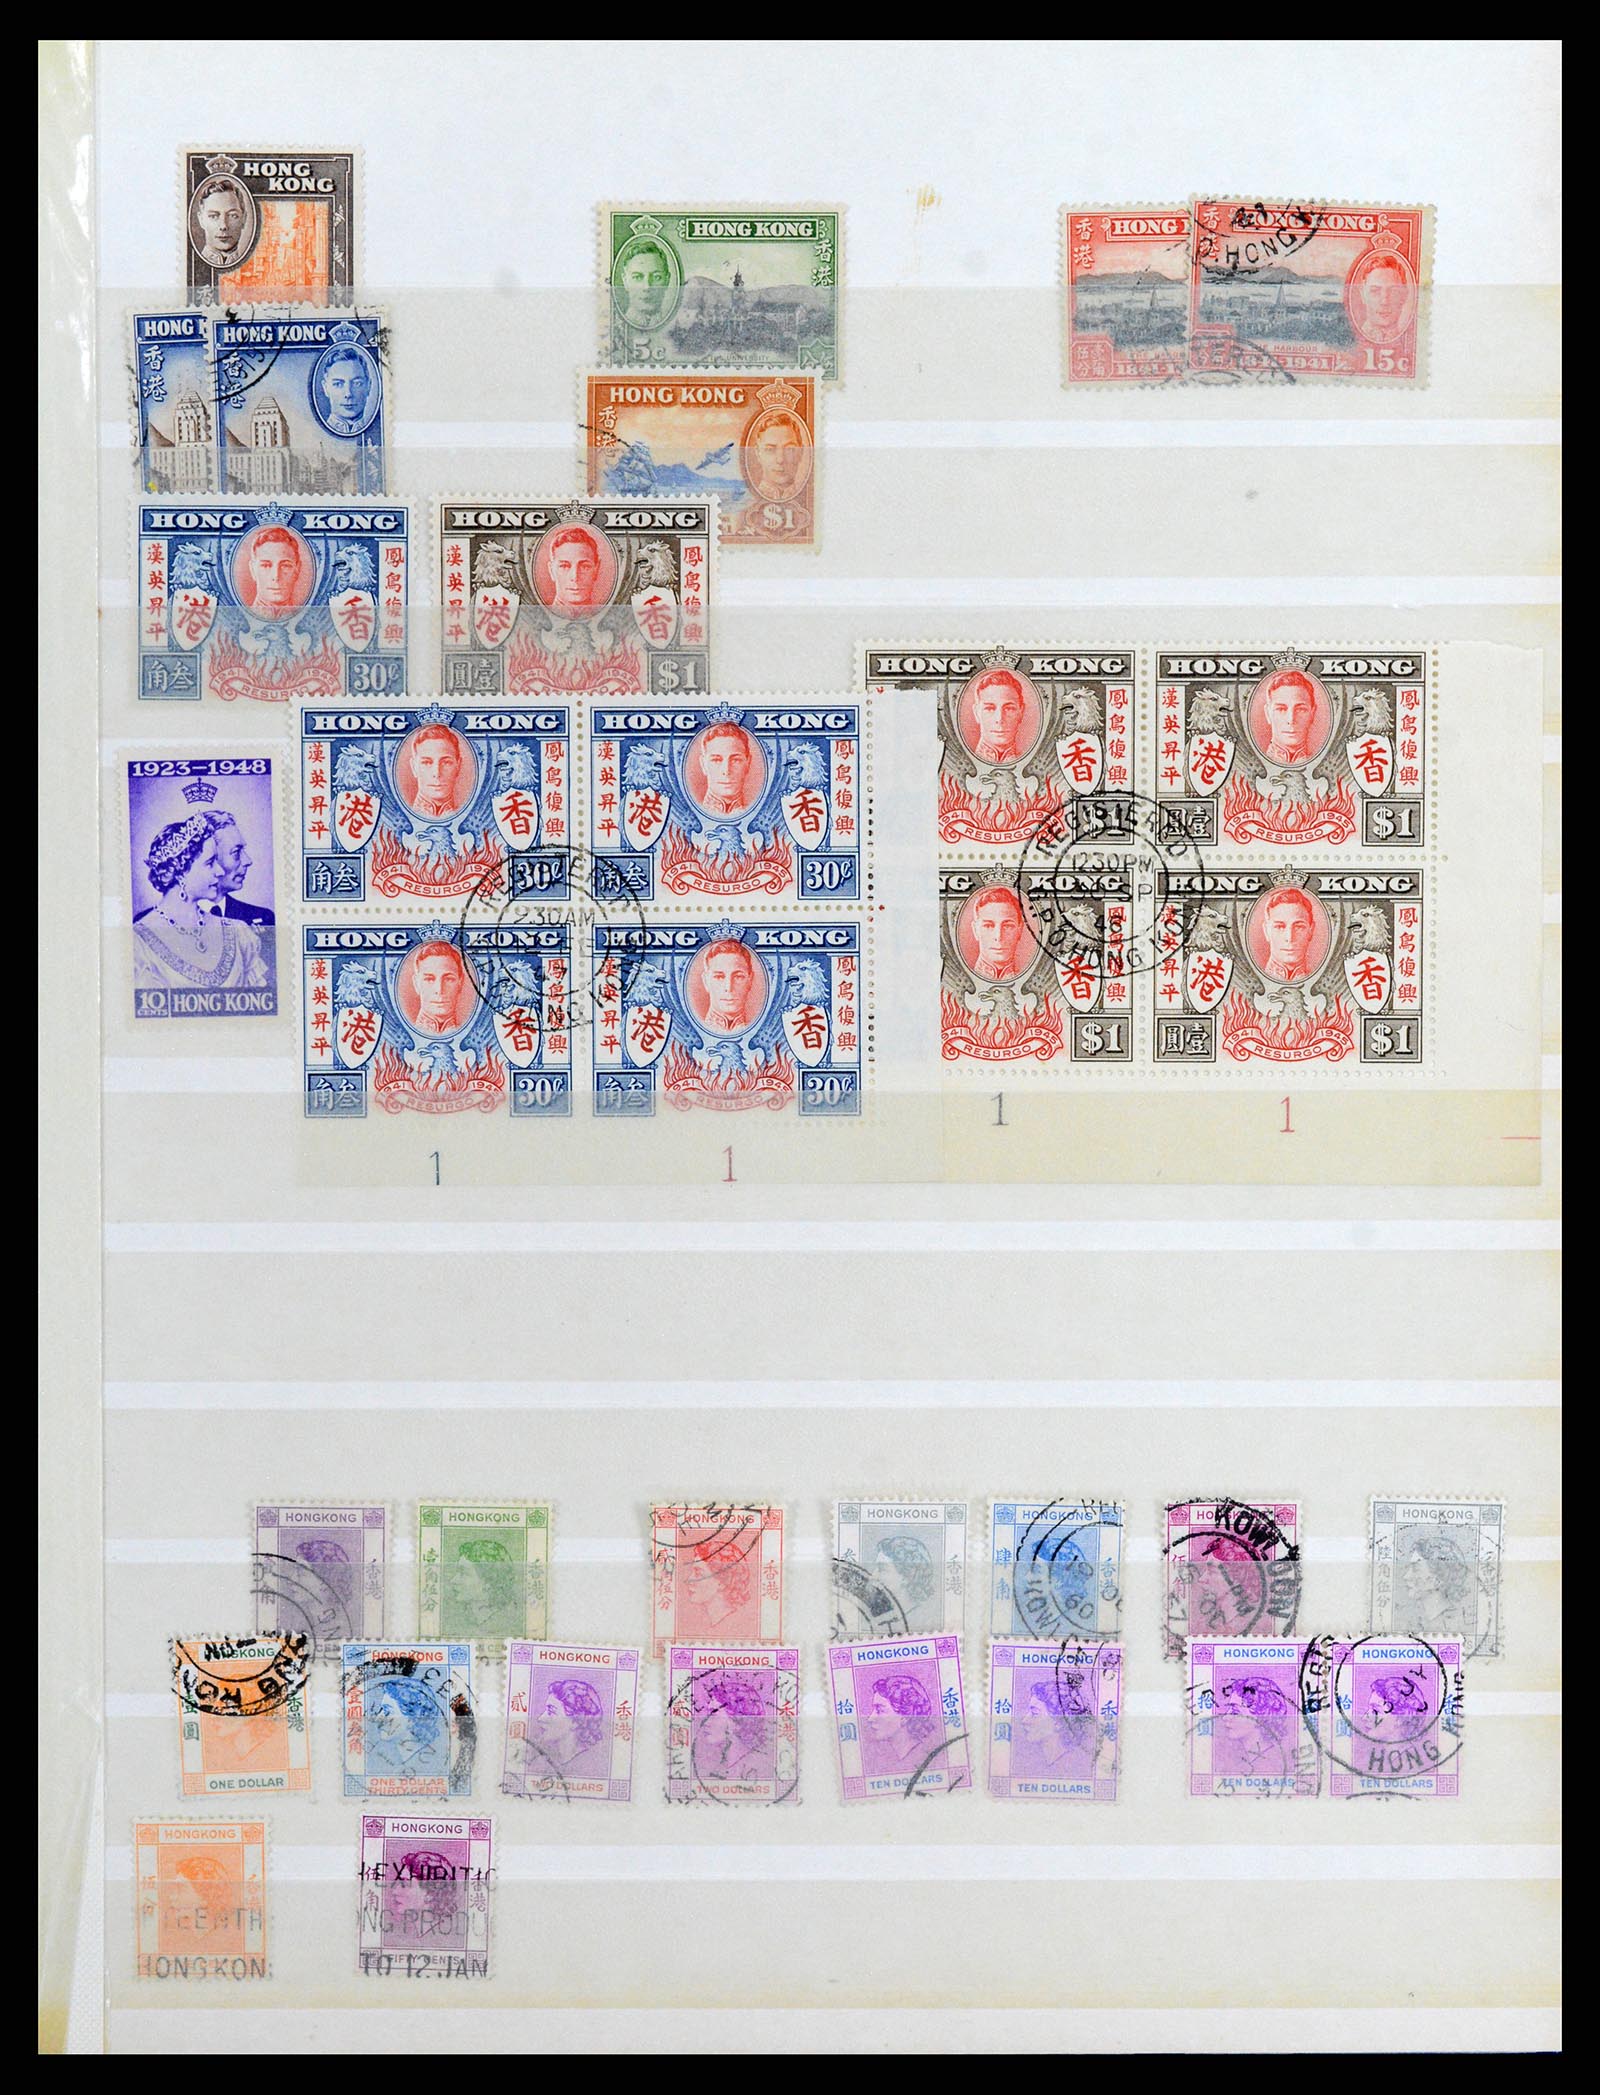 37358 048 - Stamp collection 37358 Hong Kong 1861-1997.